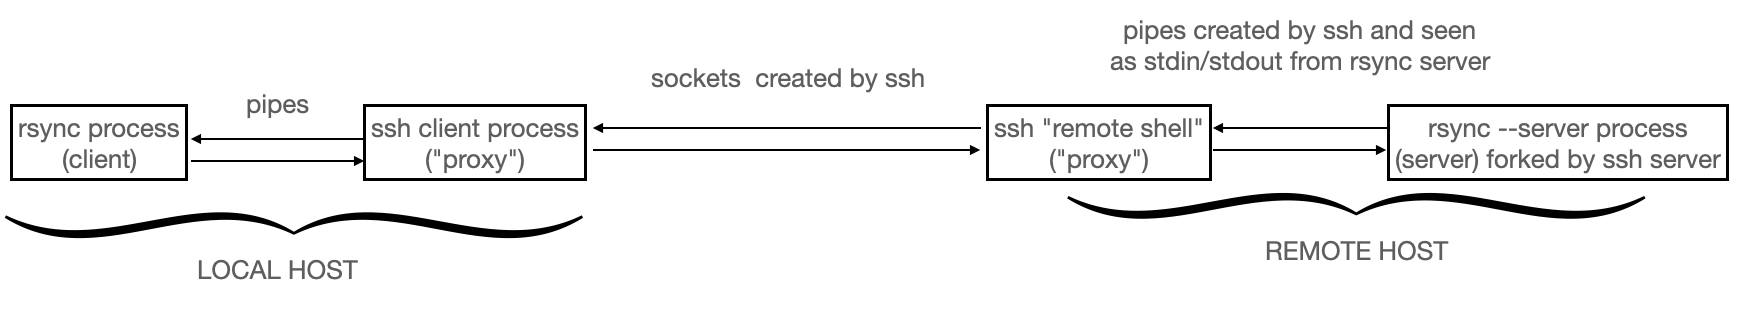 Canaux de communication entre le client et le serveur dans le cas d’une session ssh. Aucune fonction de manipulation de socket n’est appelée par rsync